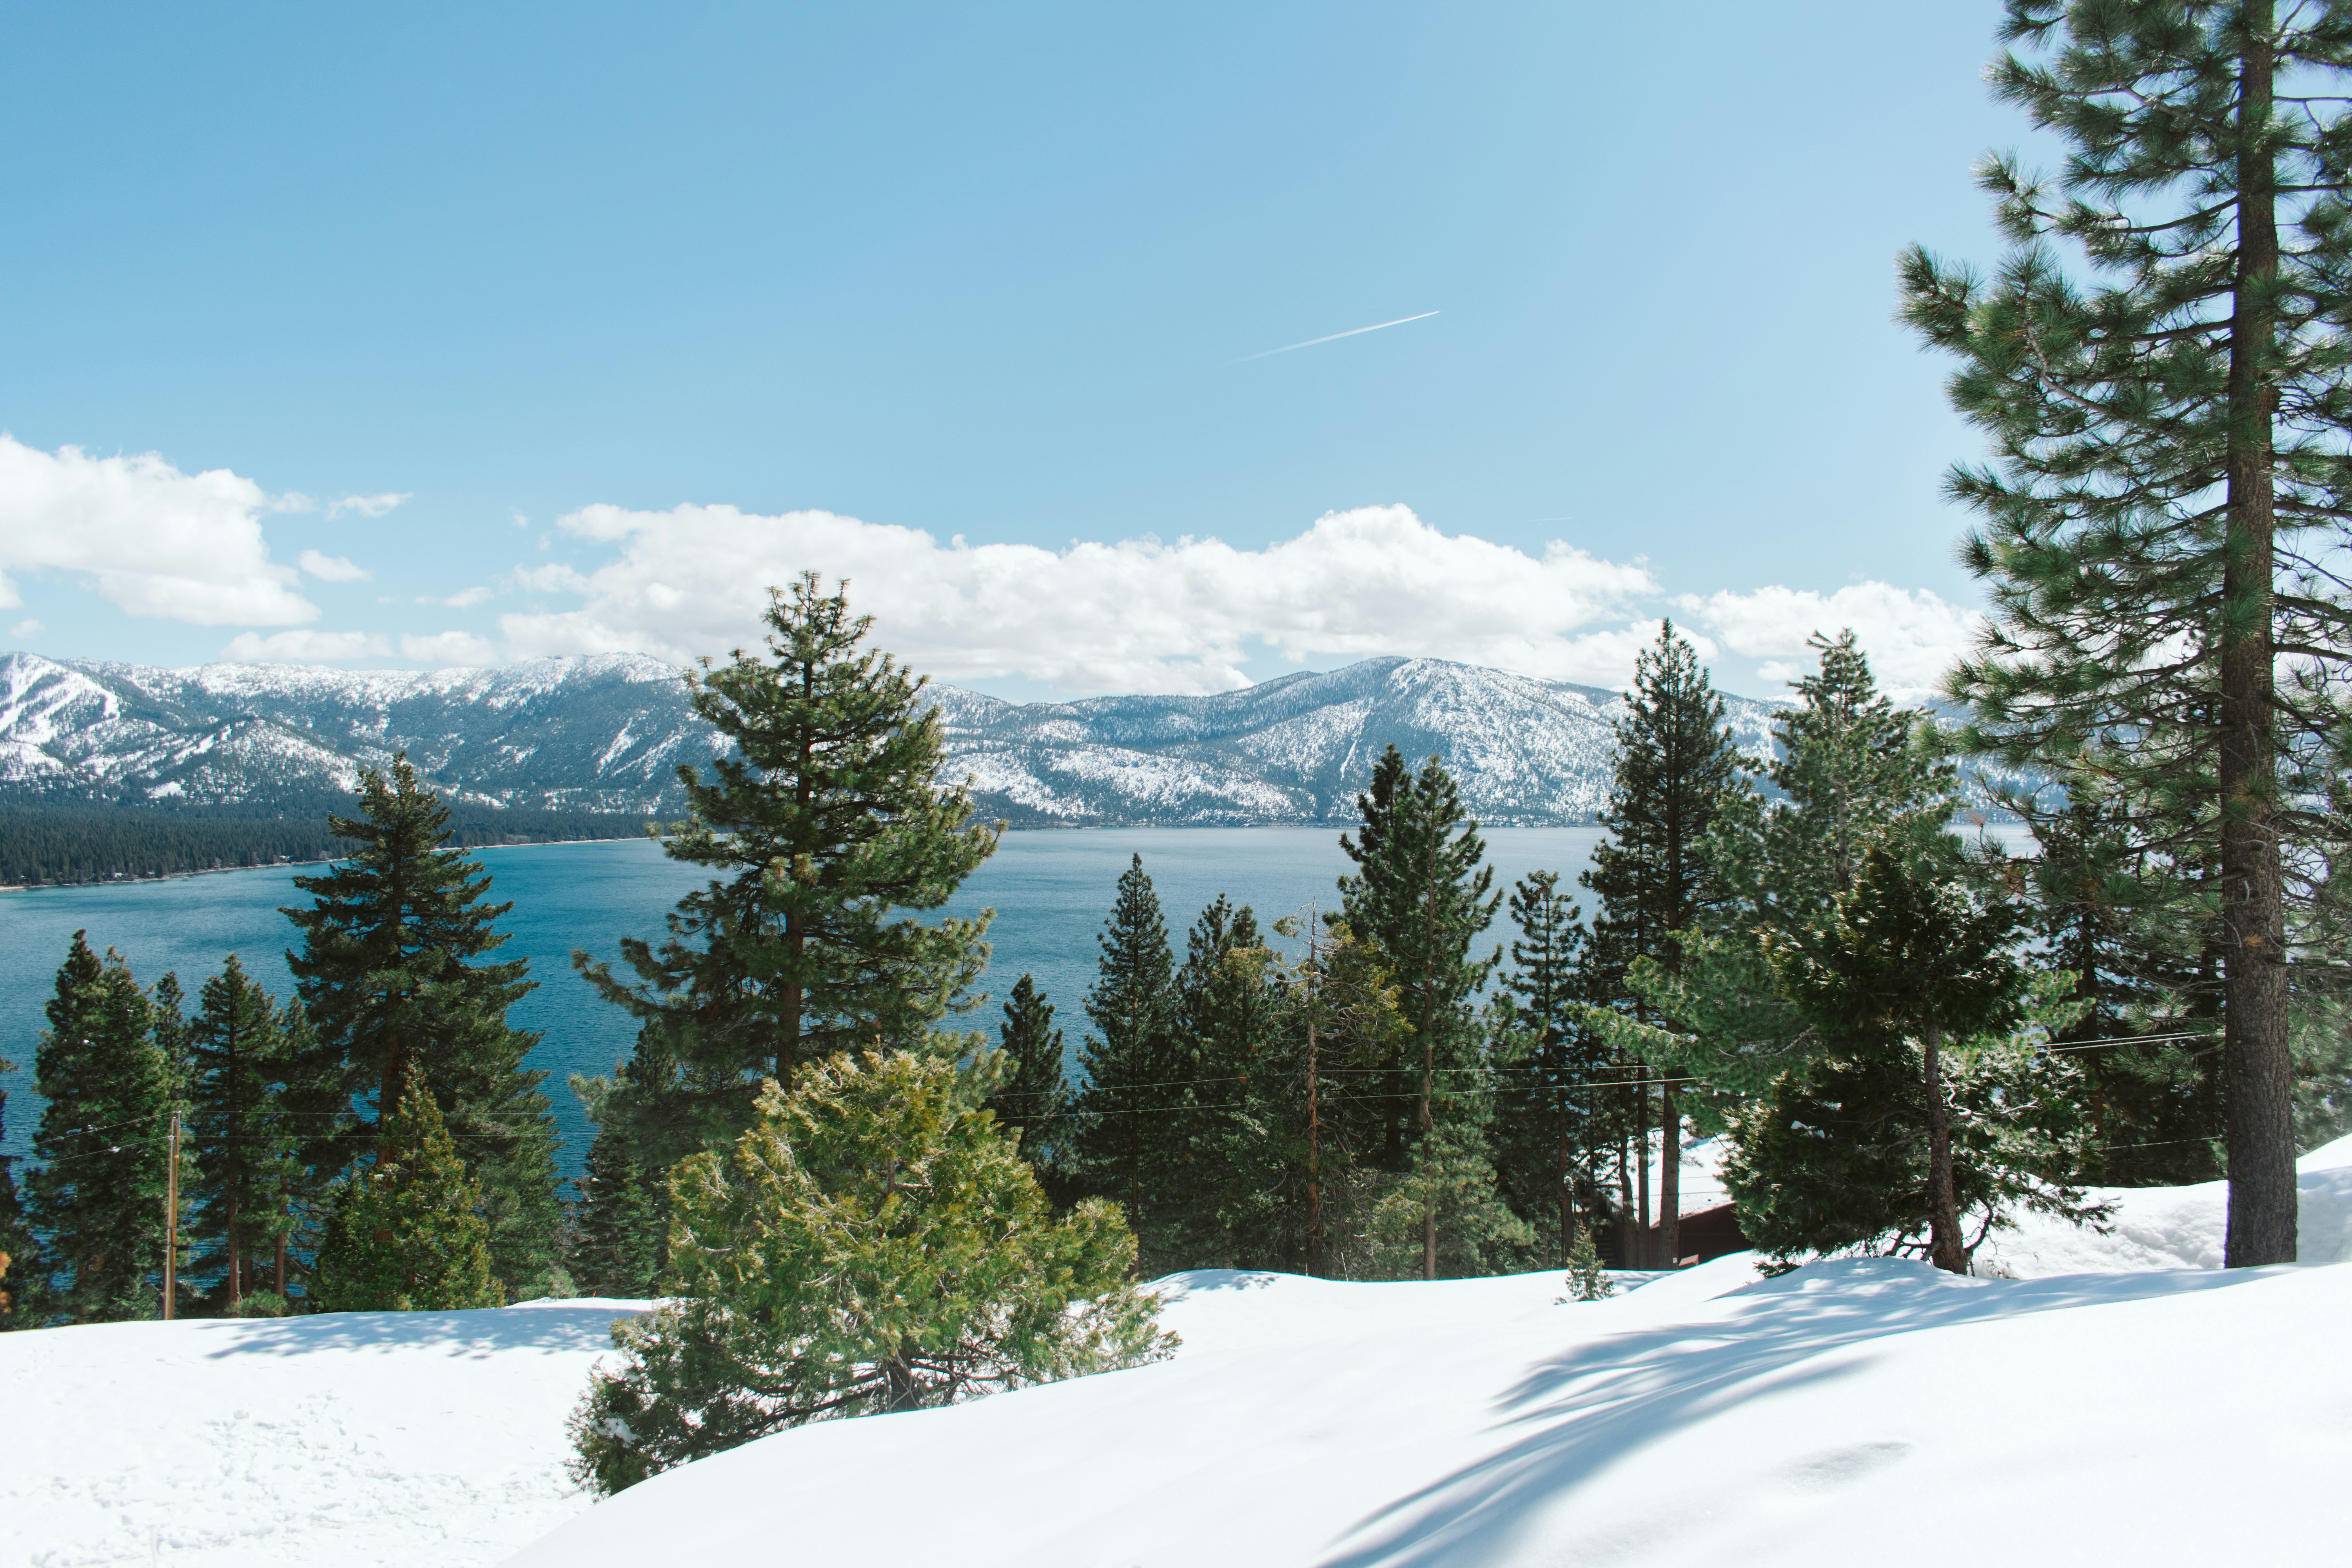 Lake Tahoe lake in winter